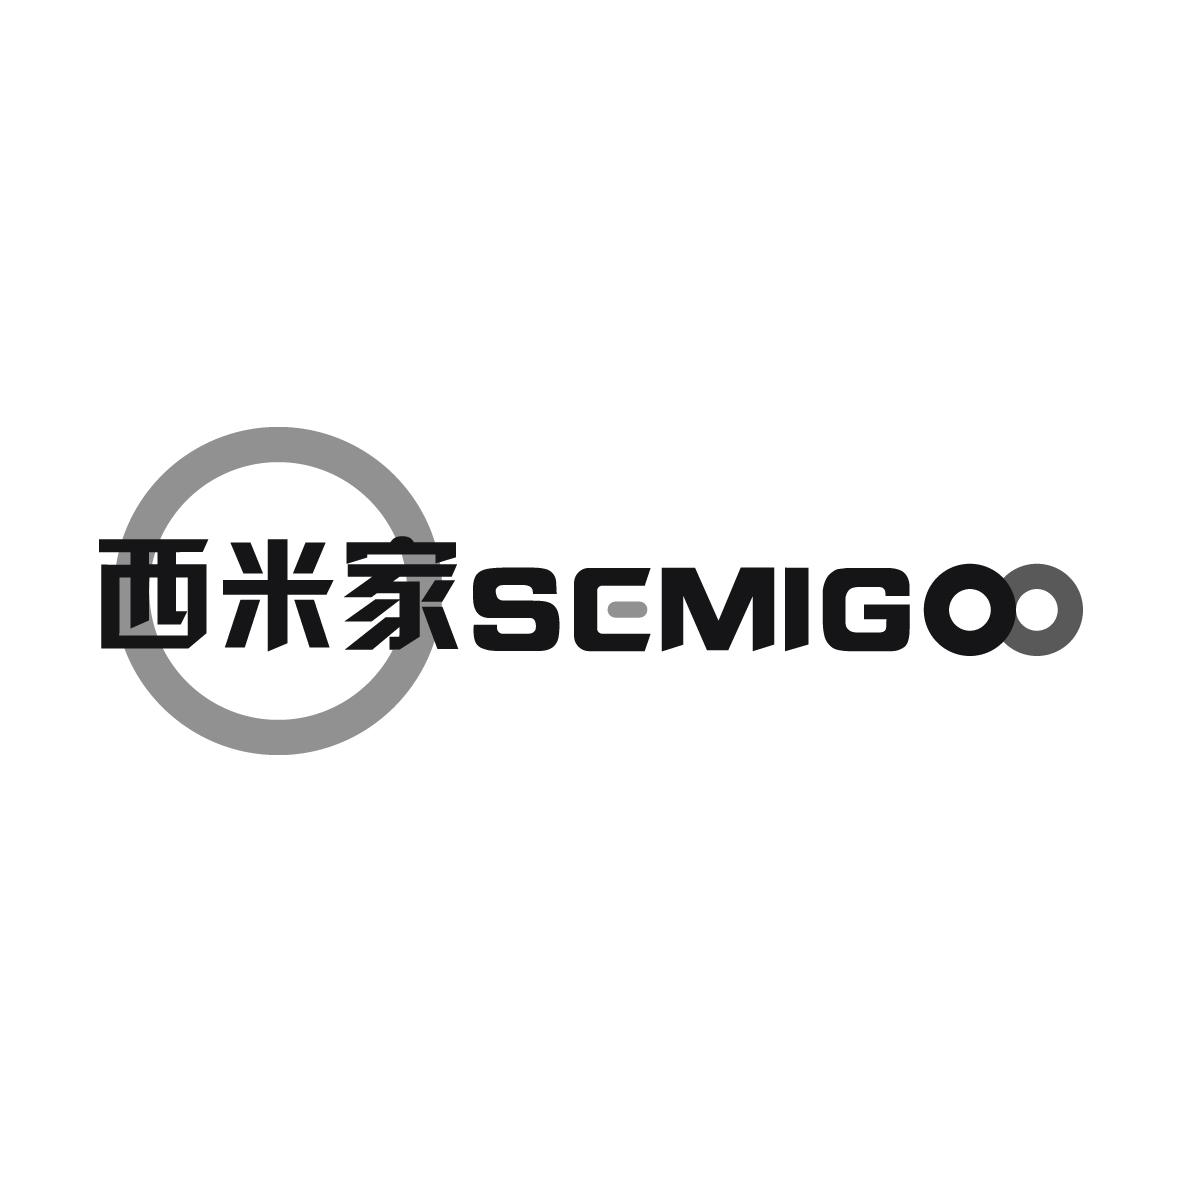 西米家
SEMIGOO门锁商标转让费用买卖交易流程